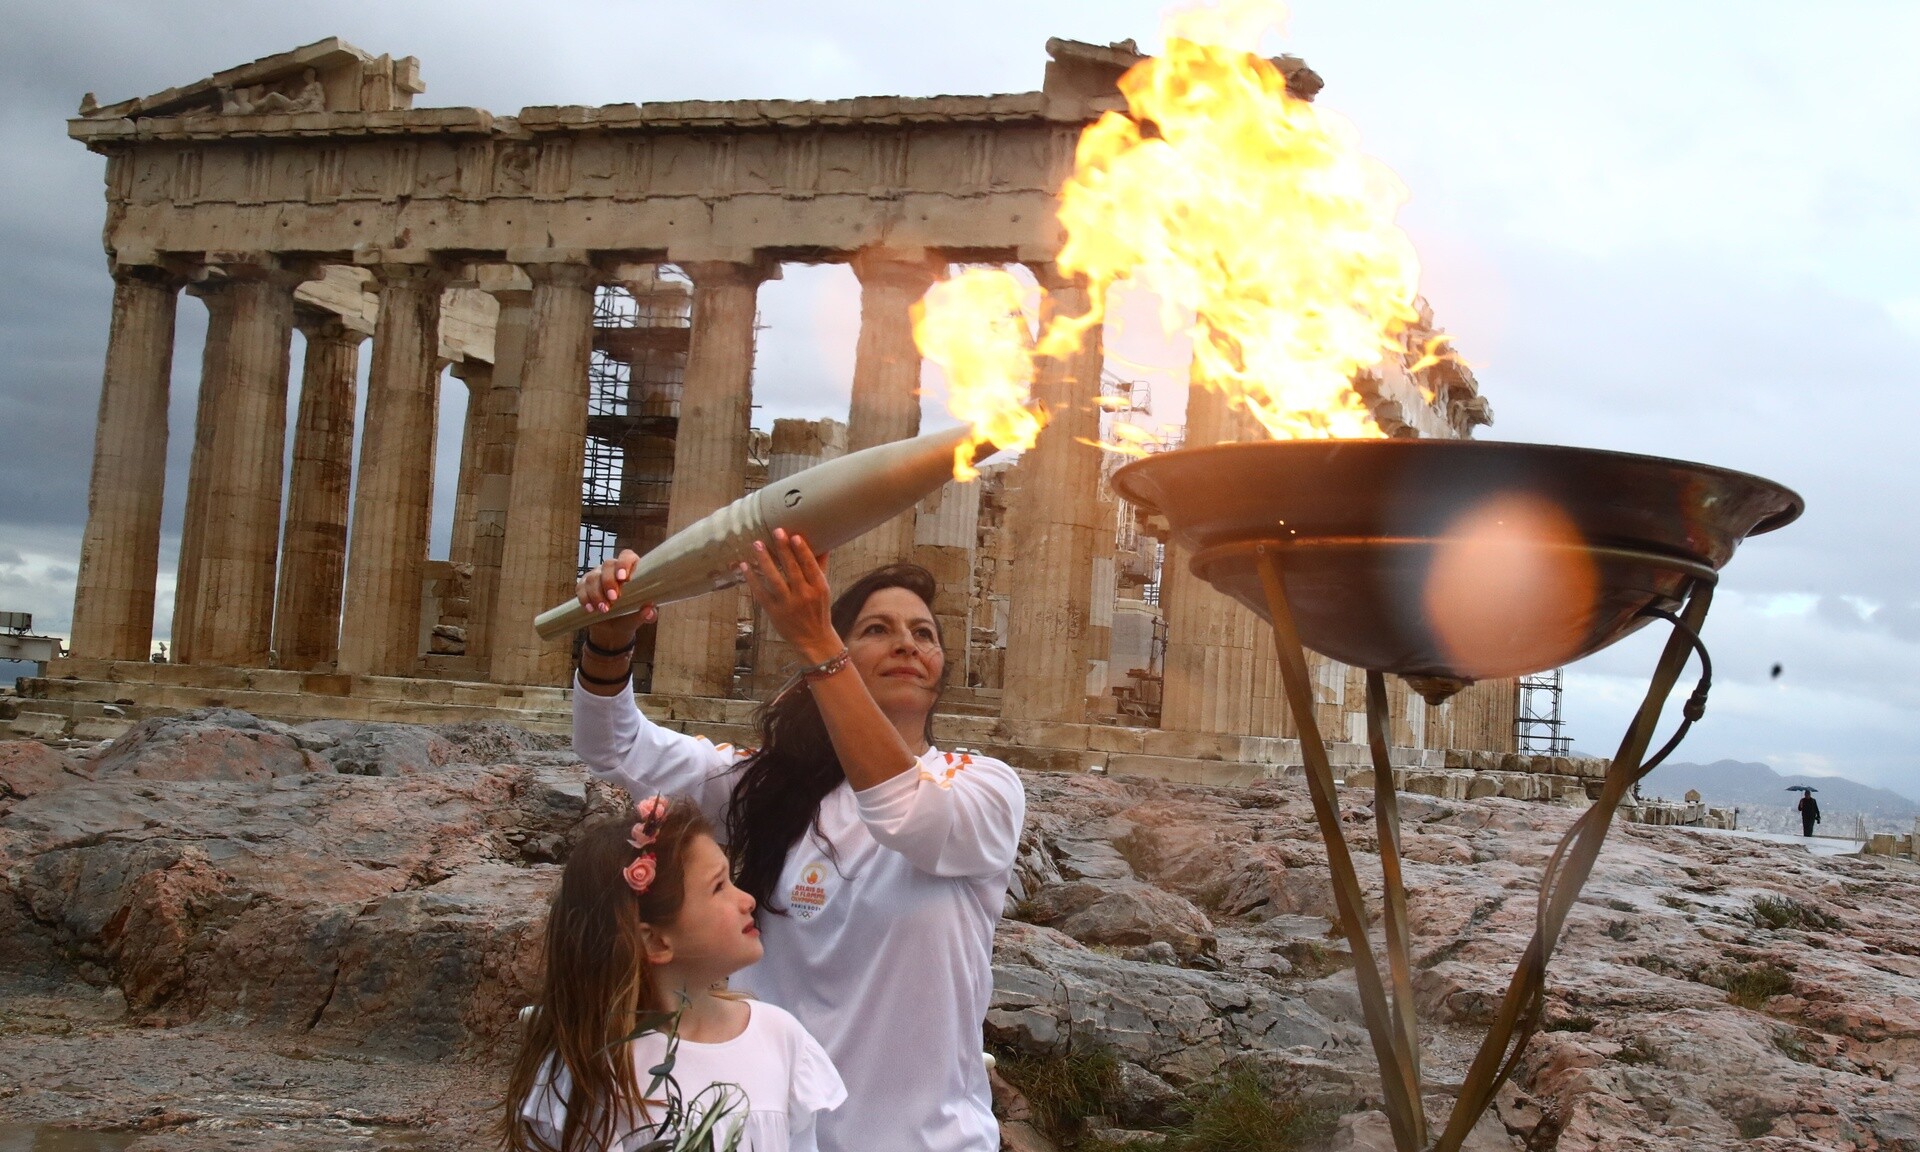 Ολυμπιακή Φλόγα: Έφτασε στην Αθήνα - Έλαμπε όλο το βράδυ στον βράχο της Ακρόπολης (φωτο)